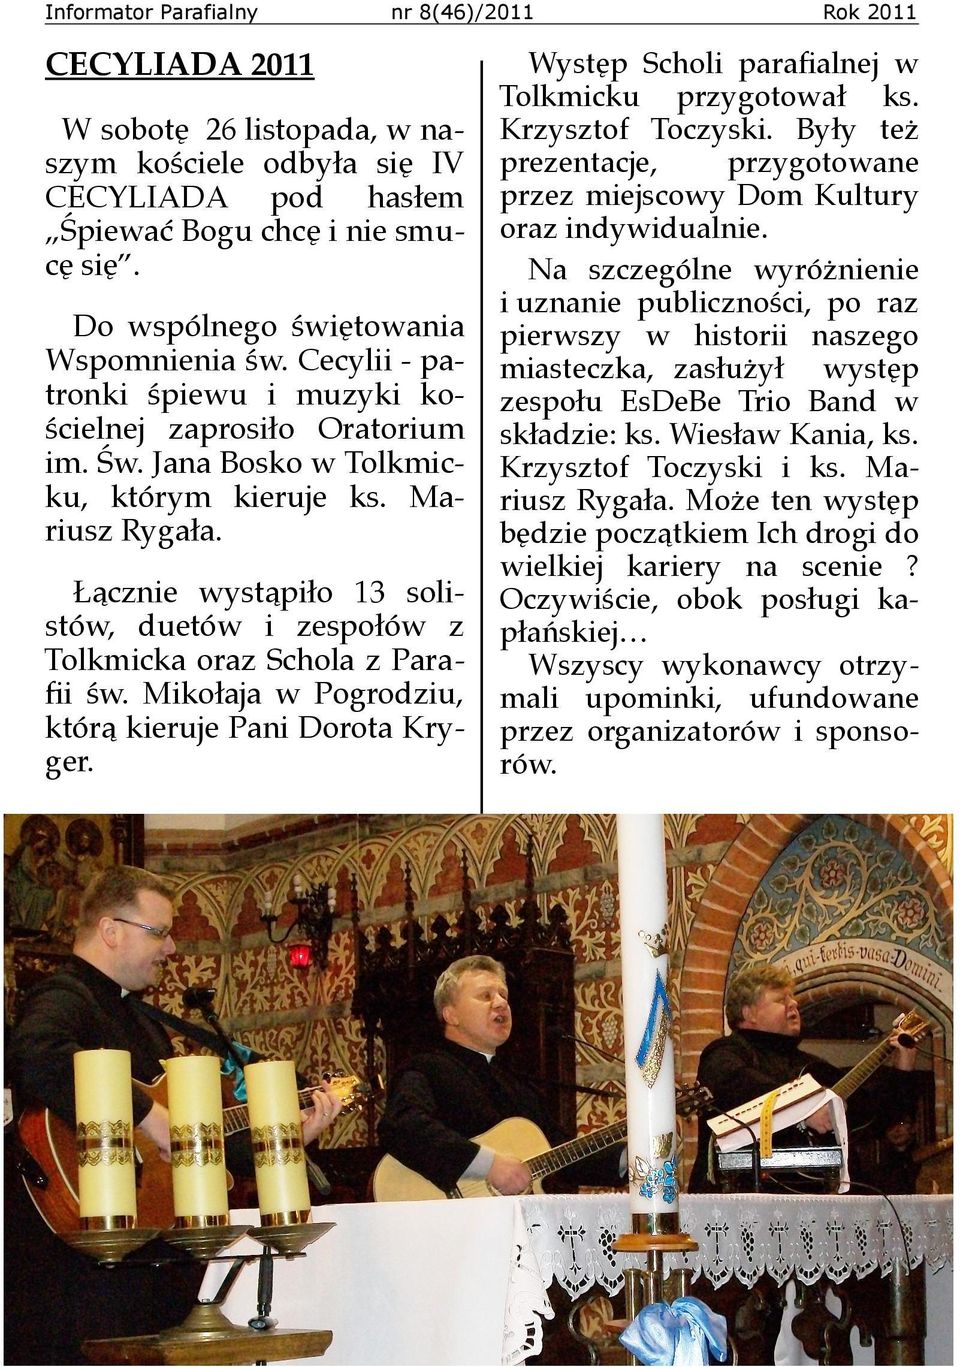 Łącznie wystąpiło 13 solistów, duetów i zespołów z Tolkmicka oraz Schola z Parafii św. Mikołaja w Pogrodziu, którą kieruje Pani Dorota Kryger.